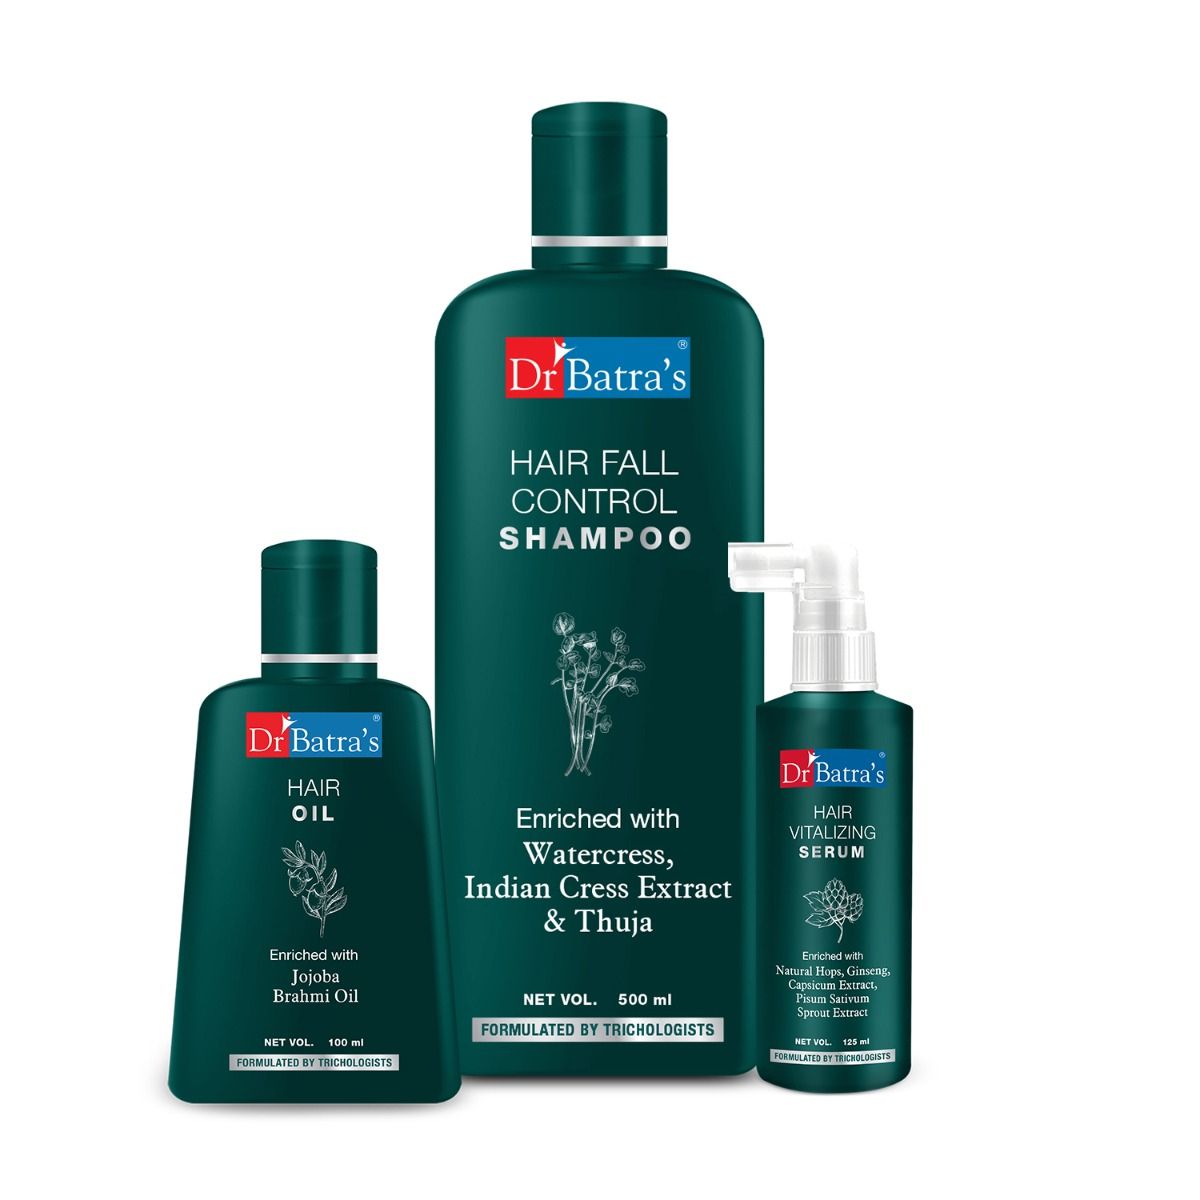     			Dr Batra's Hair Vitalizing Serum, Hair Fall Control Shampoo And Hair Oil (Pack Of 3)